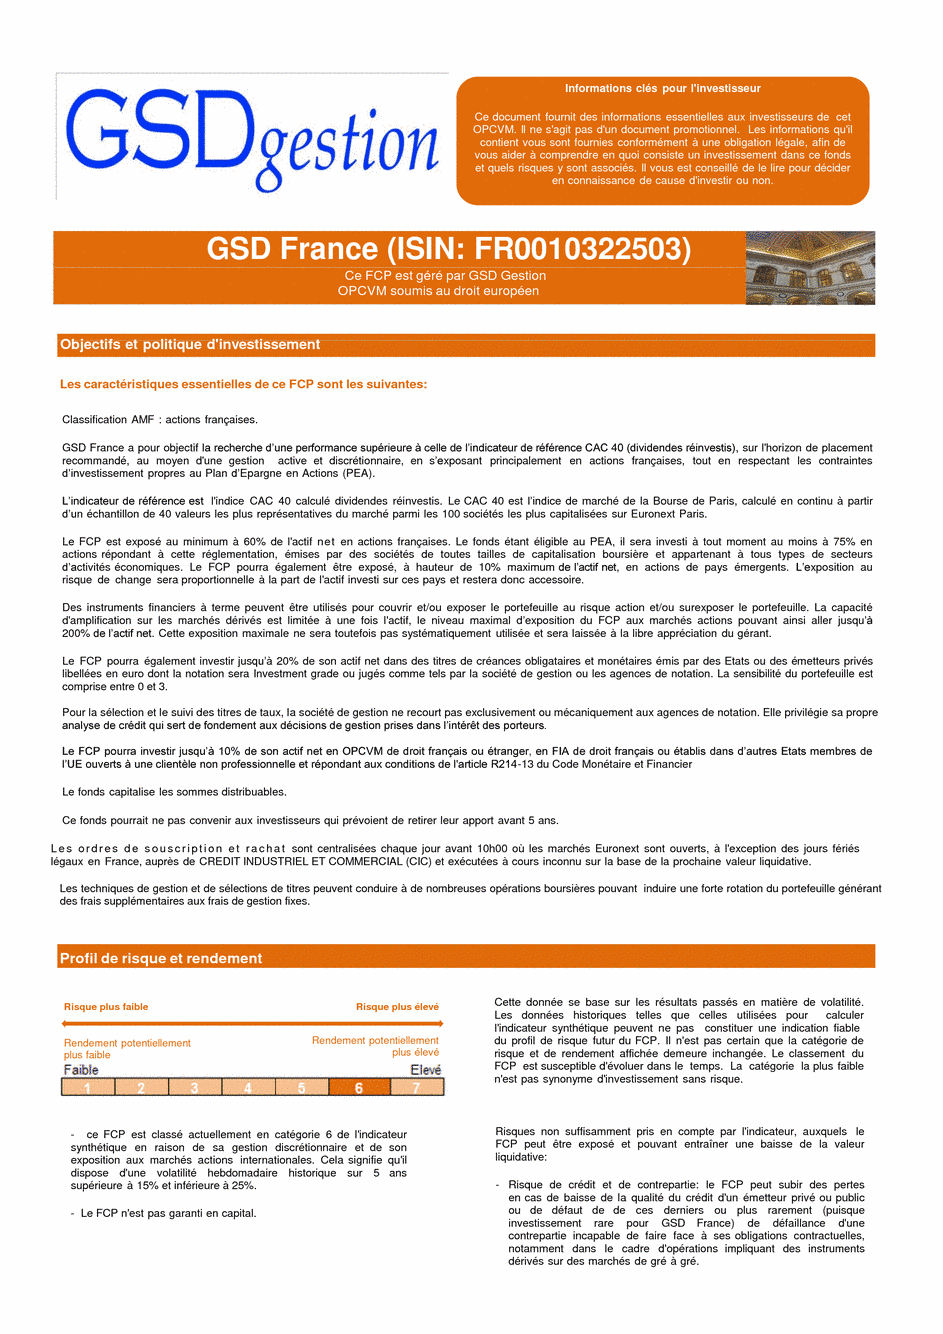 DICI-Prospectus Complet GSD France - 17/02/2017 - Français